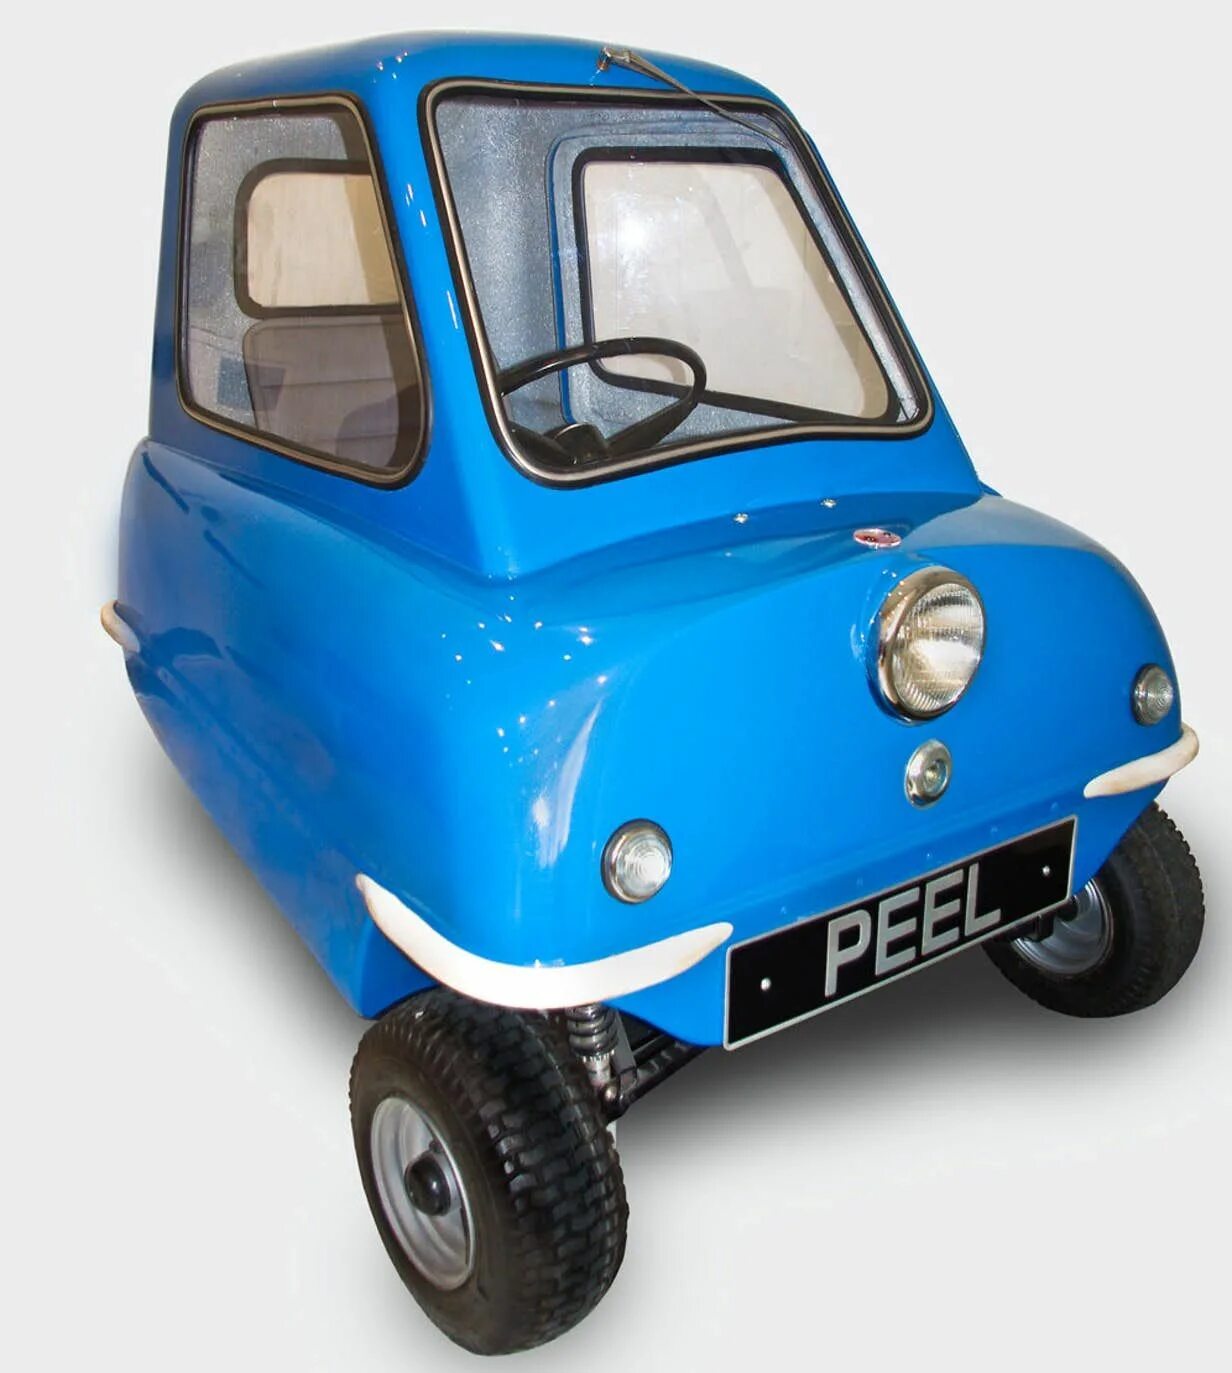 Куплю самый дешевый автомобиль. Машина Peel p50. Самый маленький автомобиль Peel p50. Peel p50 электрический. Peel p50 габариты.